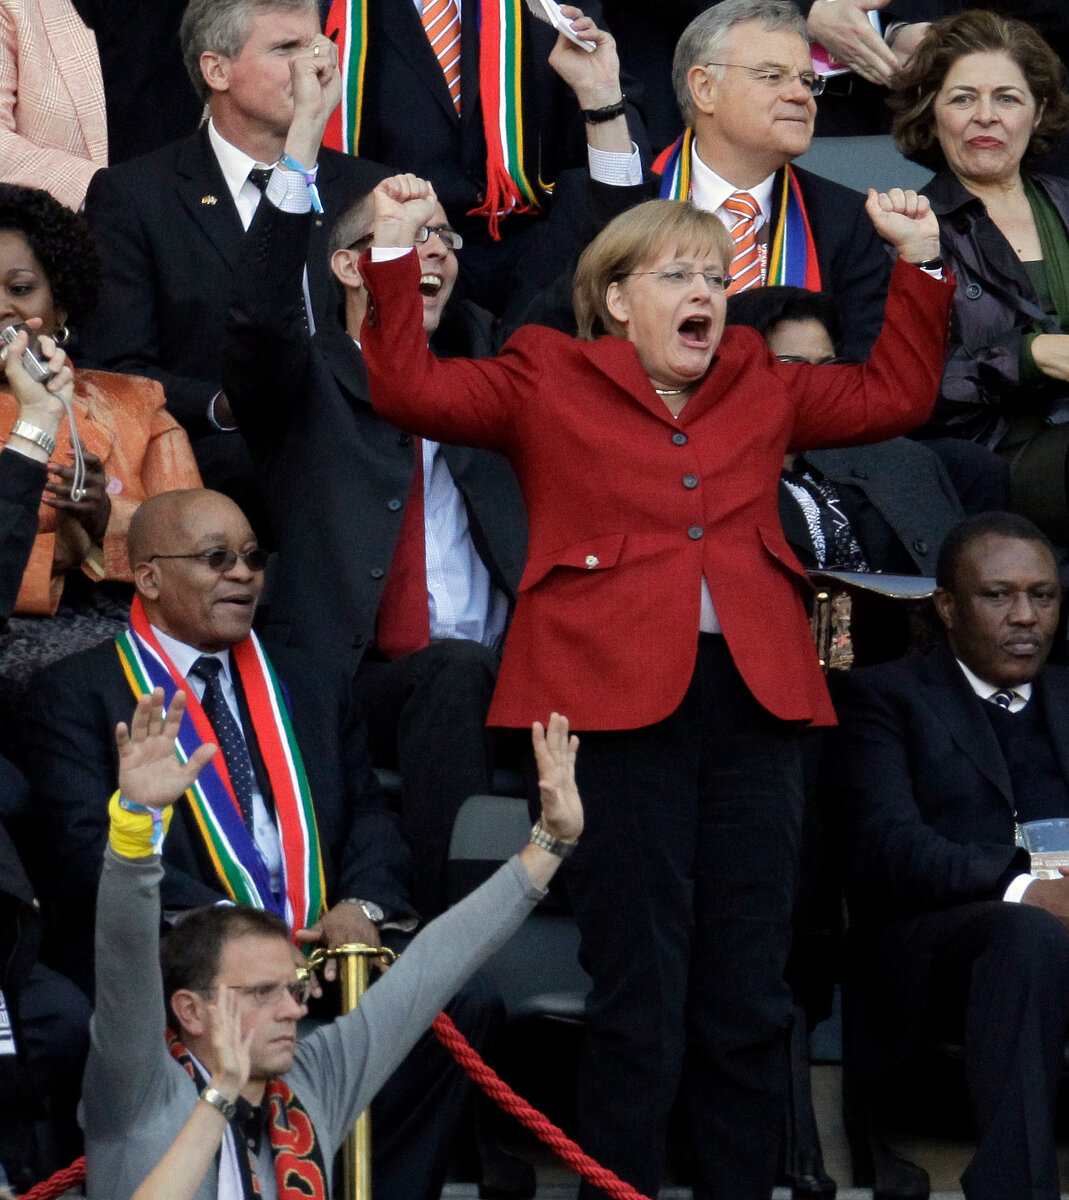 <p>Меркель празднует гол сборной Германии в ворота Аргентины во время четвертьфинала Чемпионата мира по футболу, Кейптаун, 3 июля 2010 года</p>

<p>Слева от канцлера&nbsp;президент ЮАР Джейкоб Зума. Меркель <a href="https://www.theguardian.com/world/2014/jul/14/angela-merkel-chancellor-german-team-relationship" target="_blank">известна</a> своей любовью к футболу и нежным отношением к сборной страны.</p>